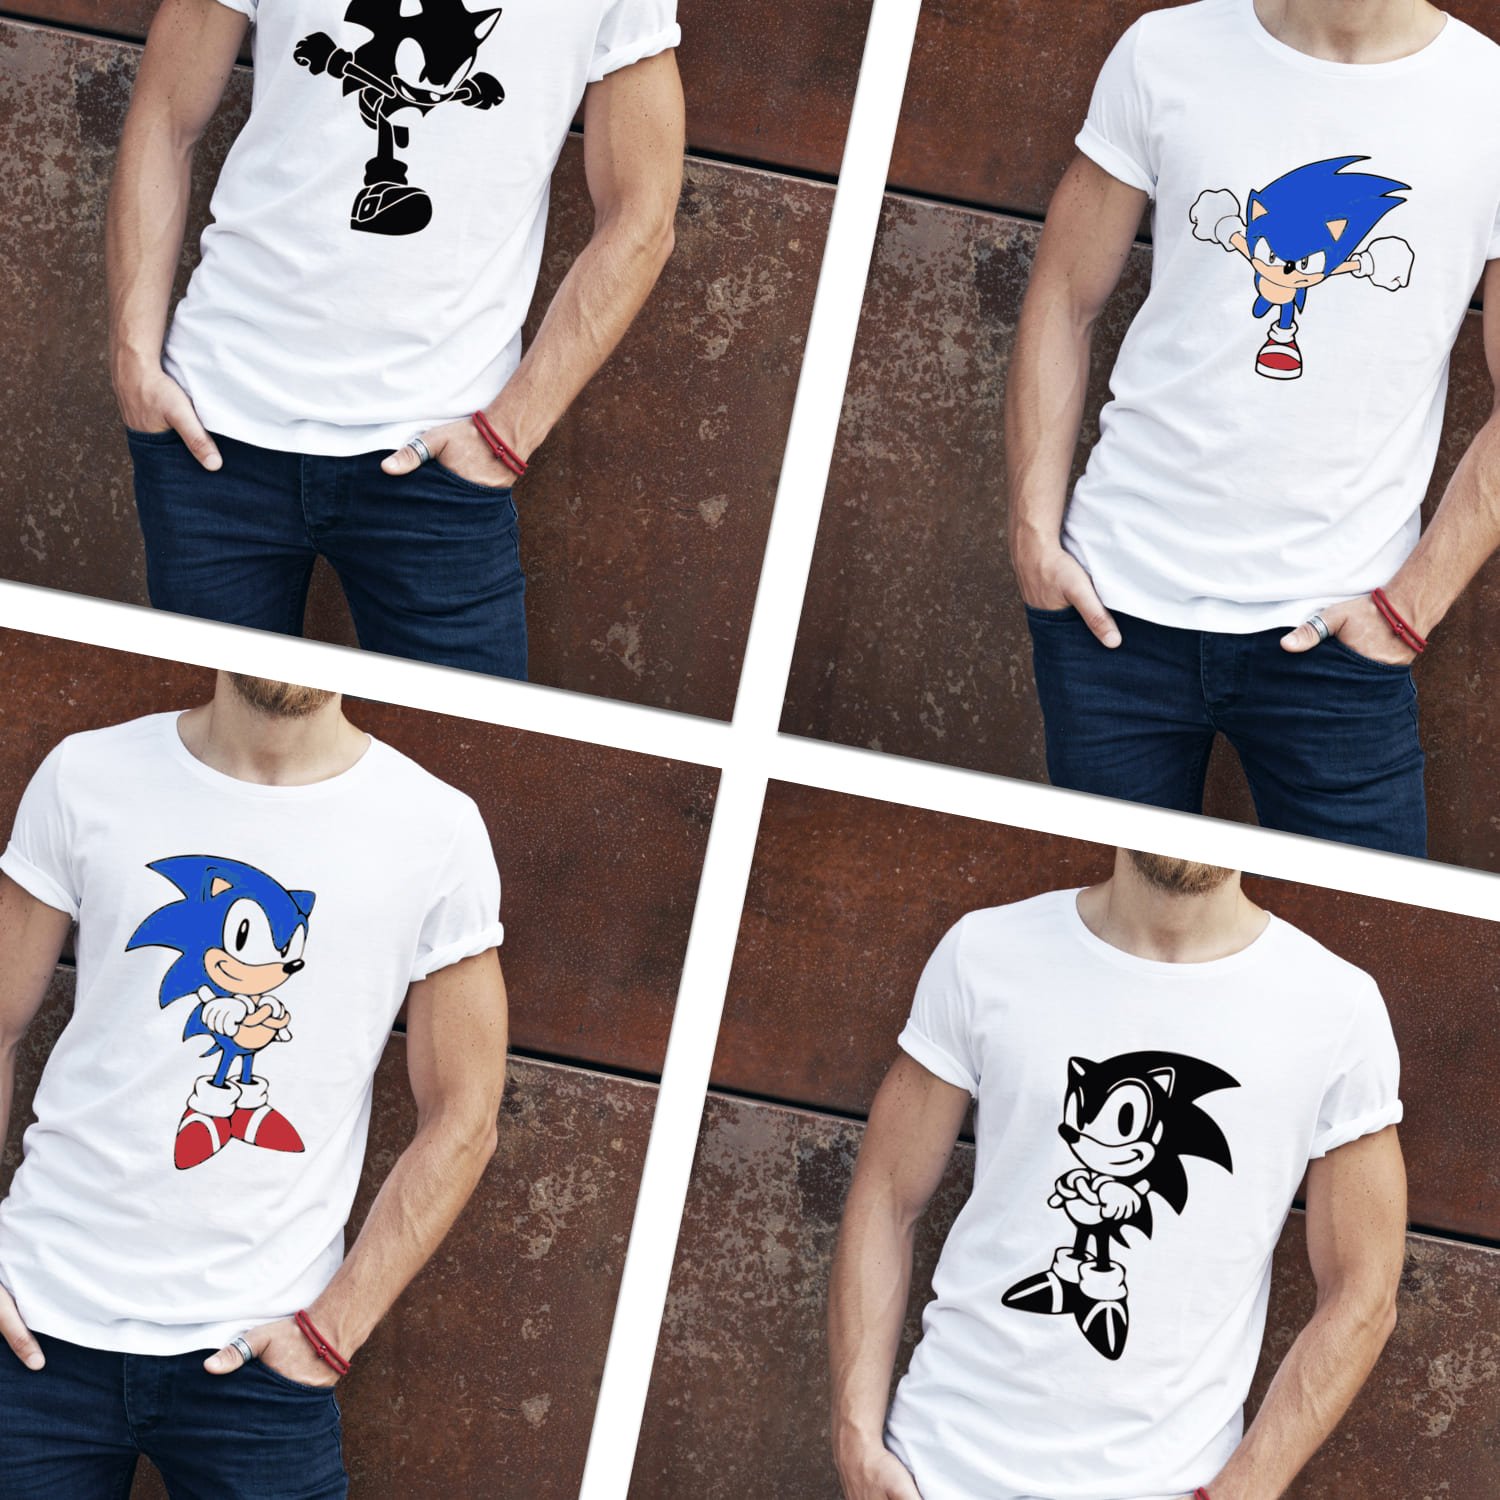 Sonic SVG T-shirt Designs Bundle cover.